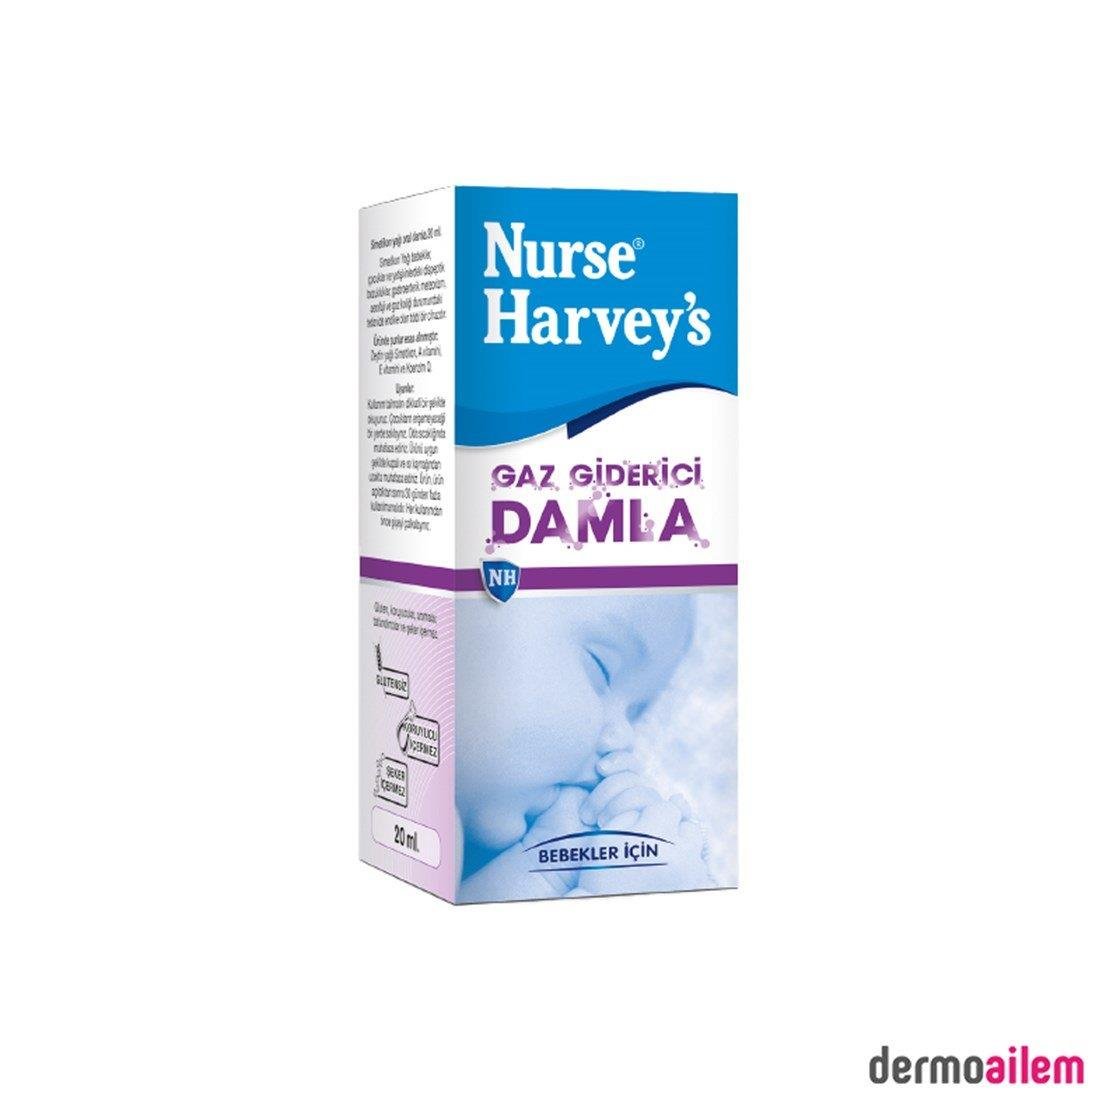 Nurse Harveys Bitkisel Gaz Giderici Damla Fiyatları | Dermoailem.com